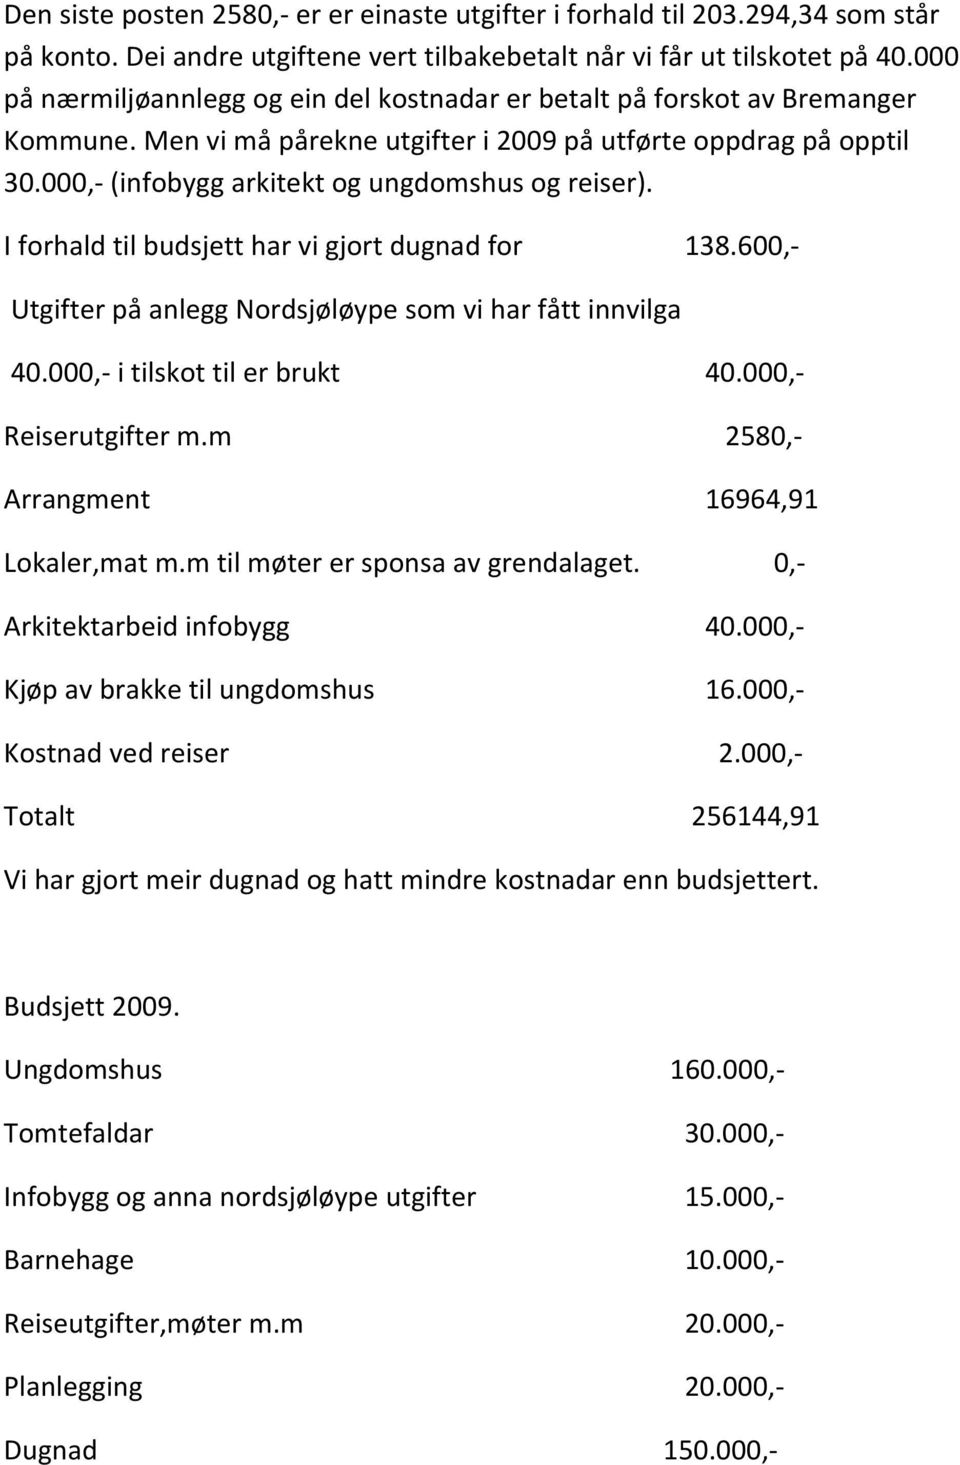 000, (infobygg arkitekt og ungdomshus og reiser). I forhald til budsjett har vi gjort dugnad for 138.600, Utgifter på anlegg Nordsjøløype som vi har fått innvilga 40.000, i tilskot til er brukt 40.